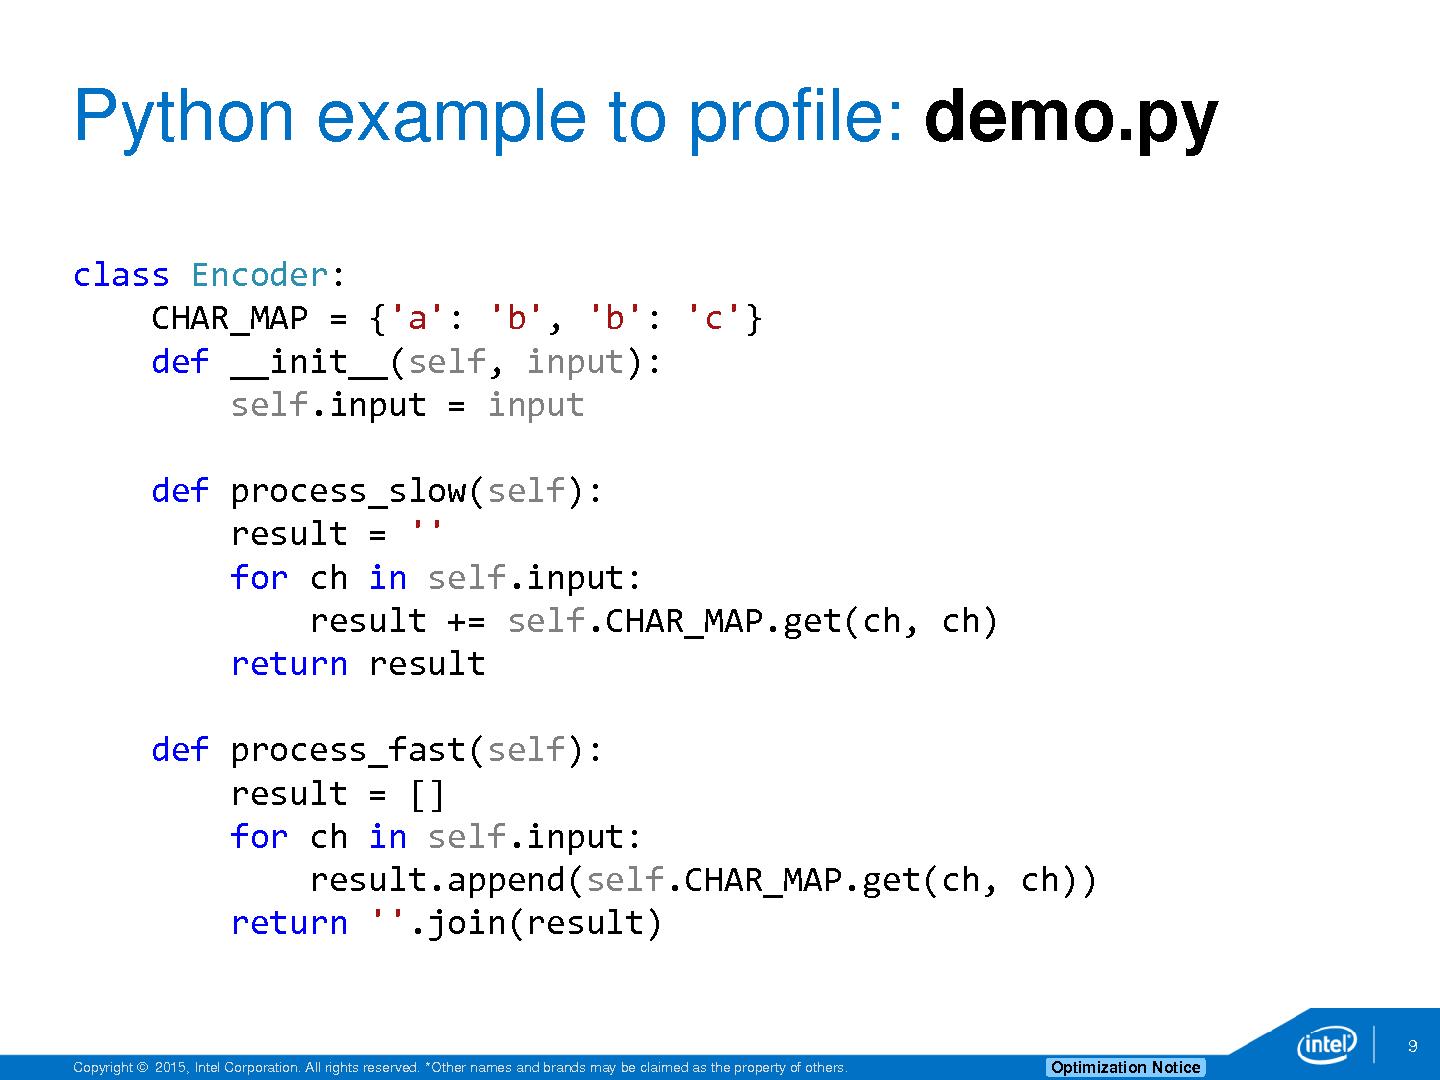 Python features. Питон программа для программирования. Python как работать в программе. Питон язык программирования пример кода. Программа на питоне пример.